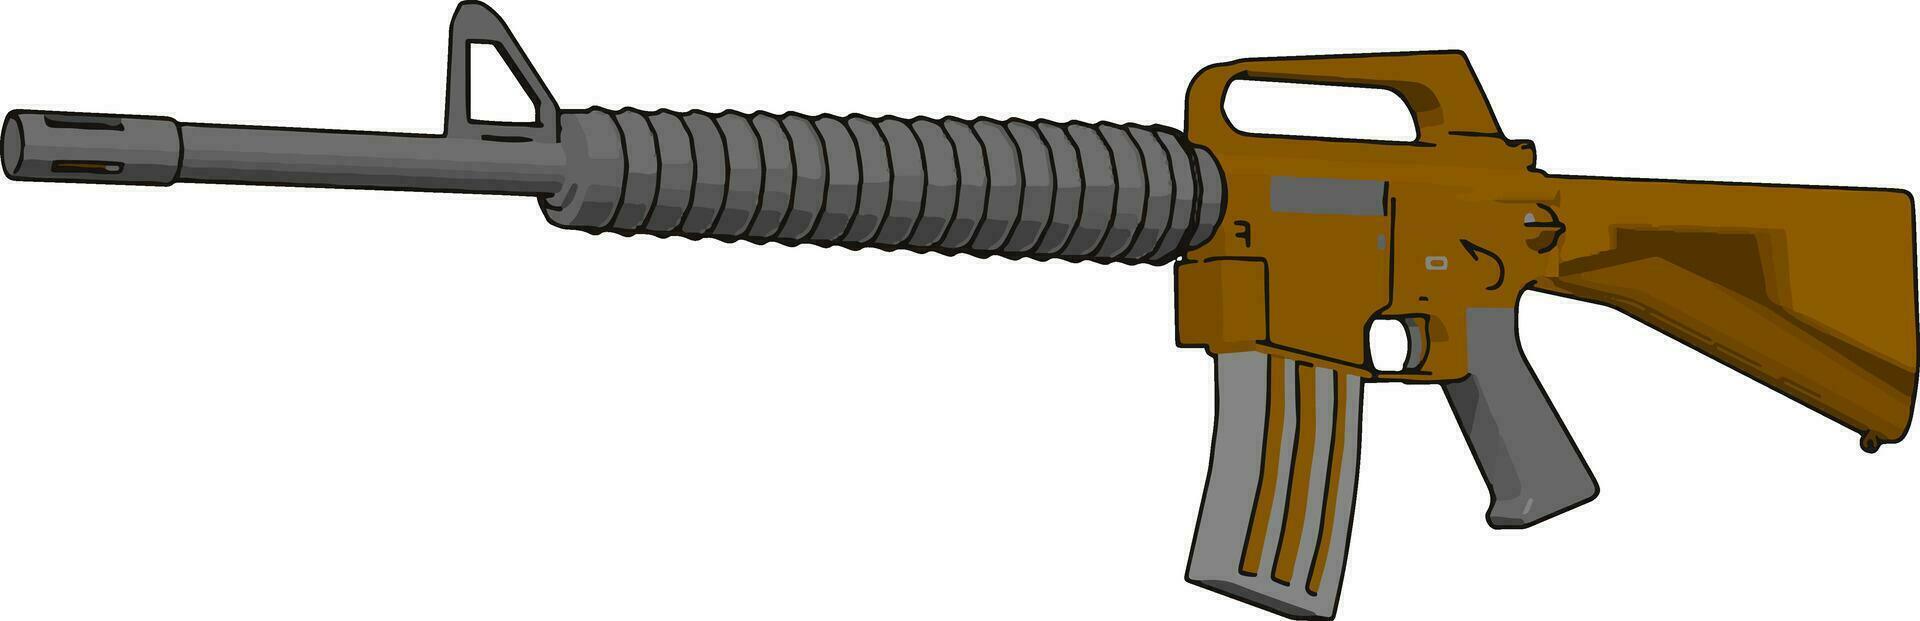 militär gevär pistol, illustration, vektor på vit bakgrund.